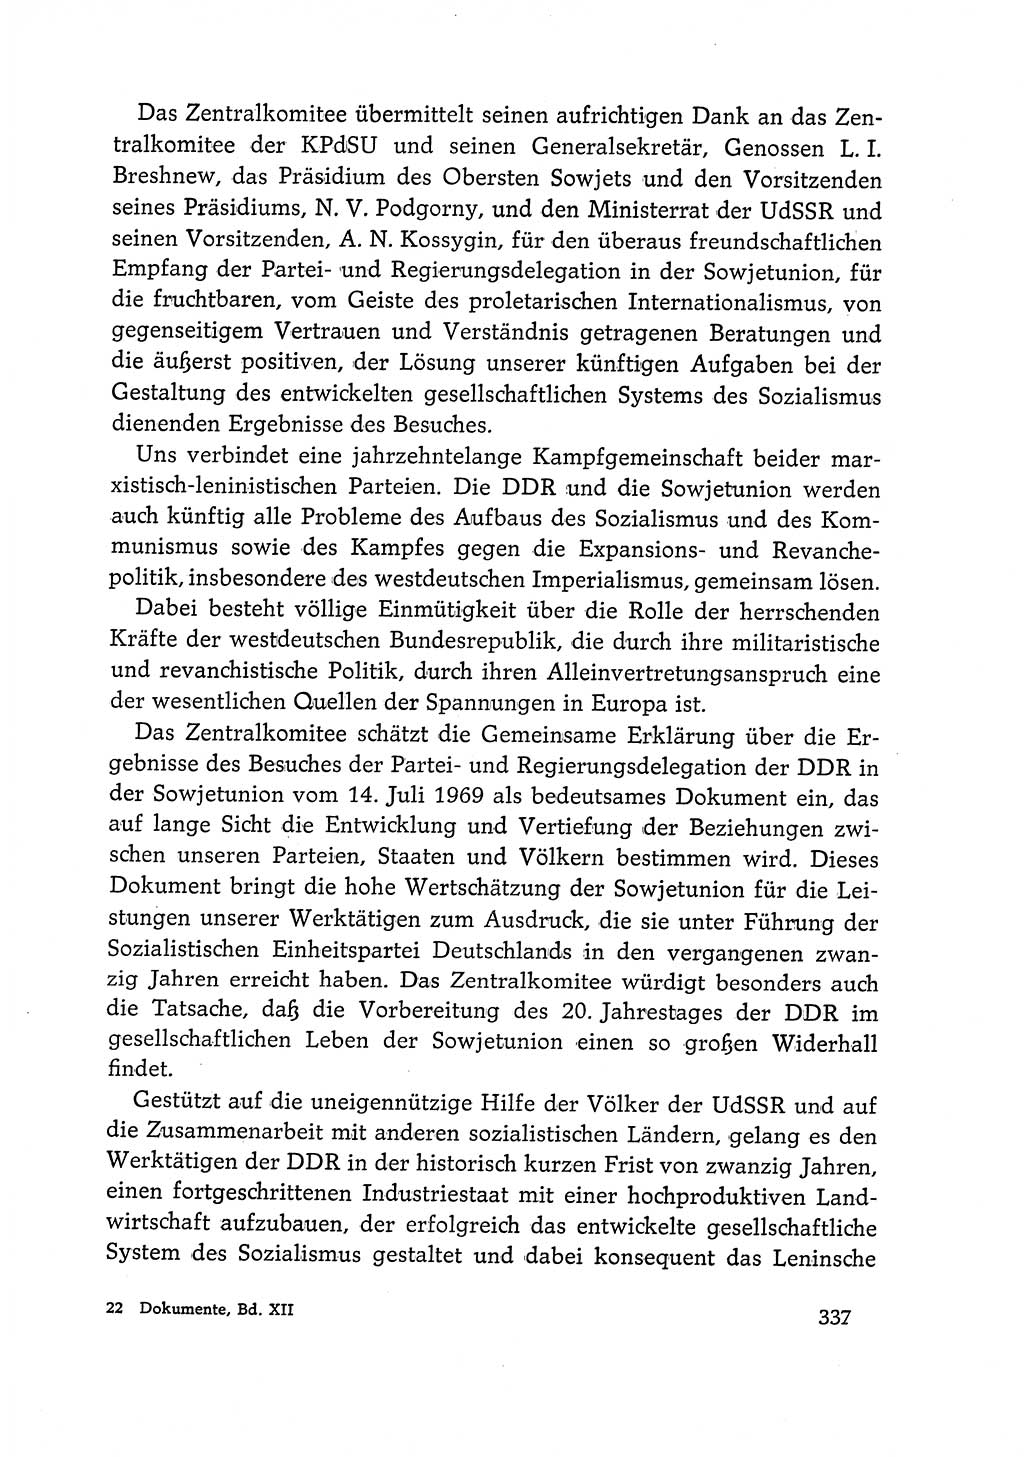 Dokumente der Sozialistischen Einheitspartei Deutschlands (SED) [Deutsche Demokratische Republik (DDR)] 1968-1969, Seite 337 (Dok. SED DDR 1968-1969, S. 337)